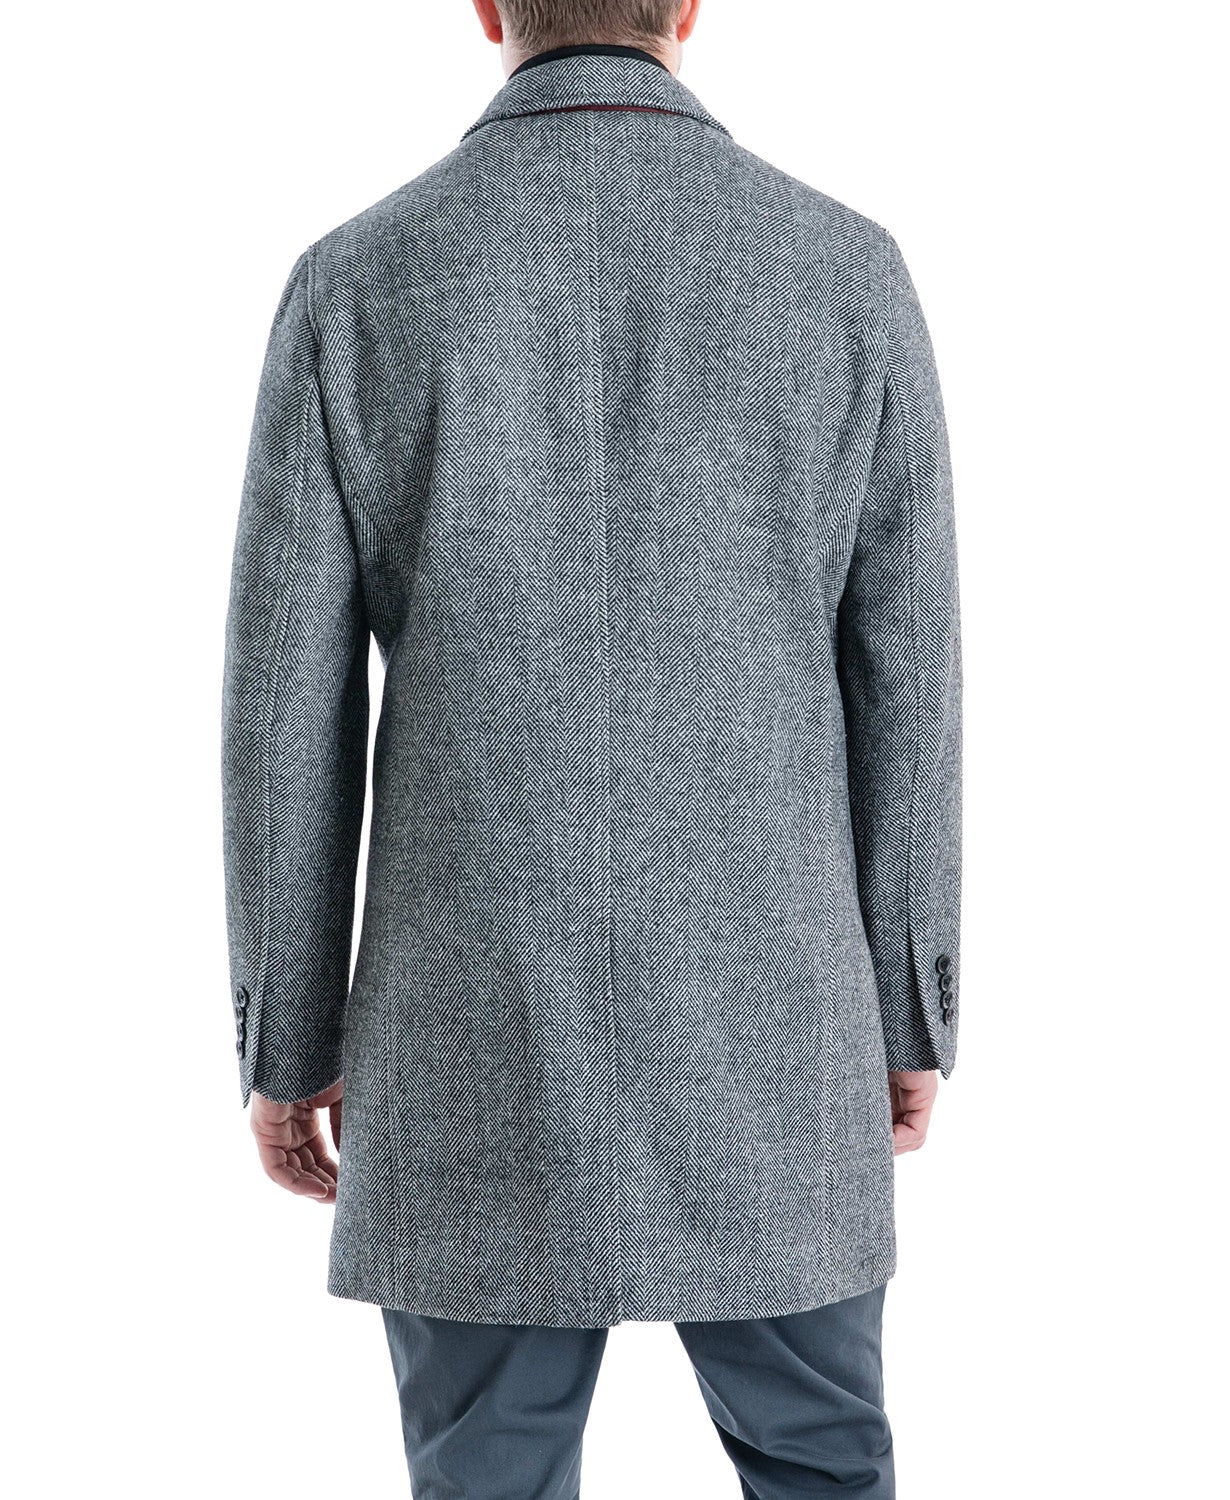 Michael Kors Men's Pike Slim Fit Top Coat 36S Herringbone Wool Overcoat